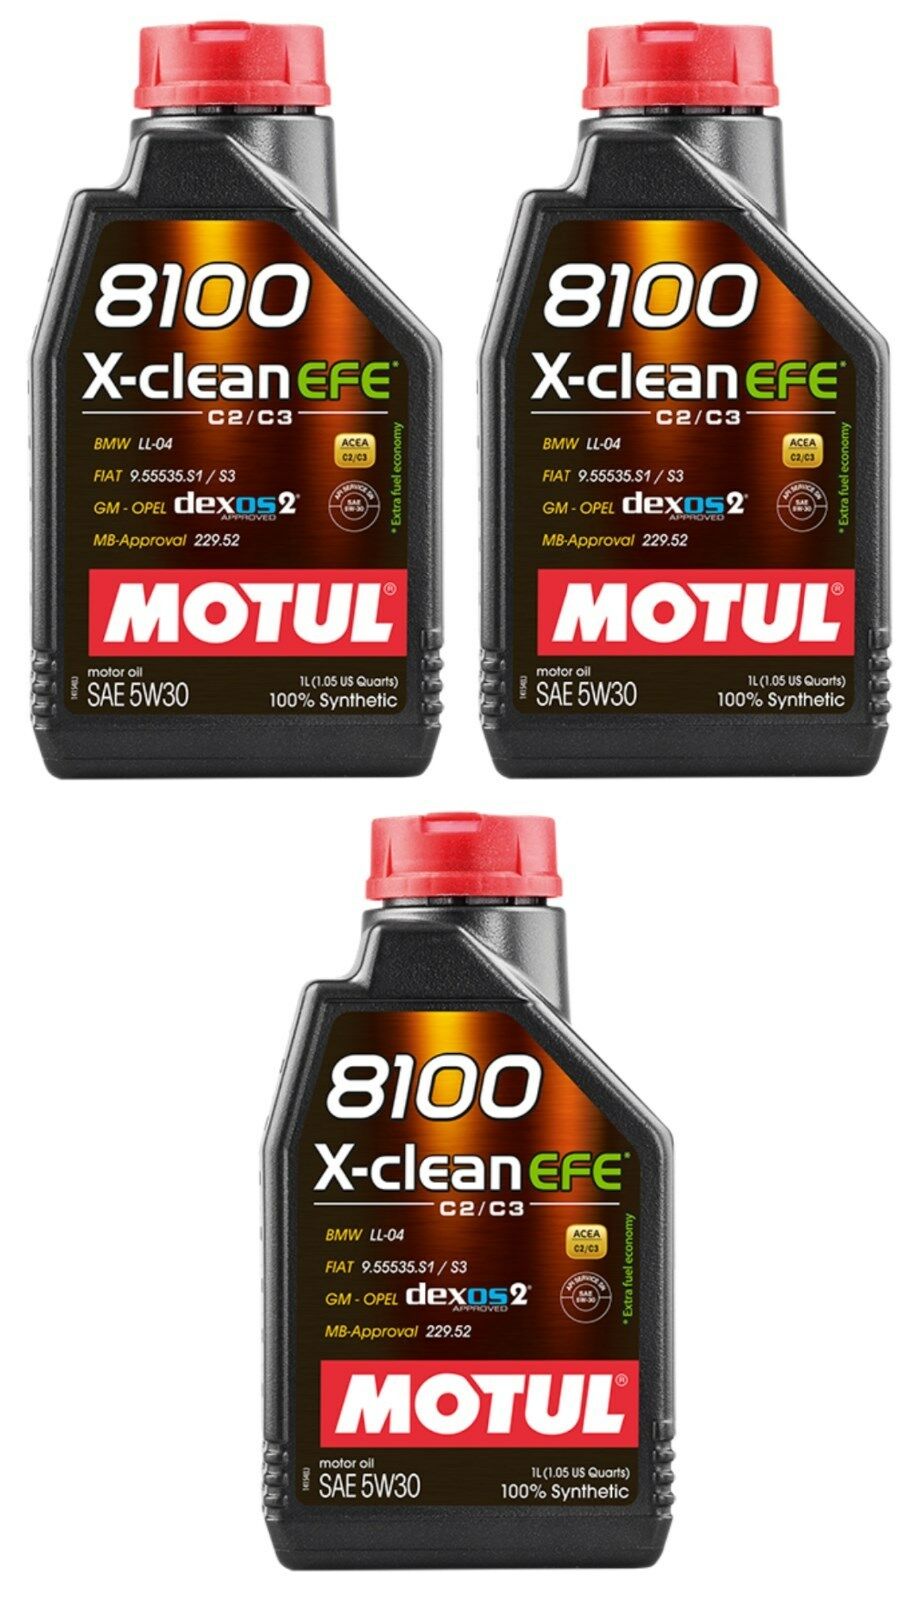 Motul 8100 X-clean EFE 5W30 Motor Oil 1-Liter Bottle